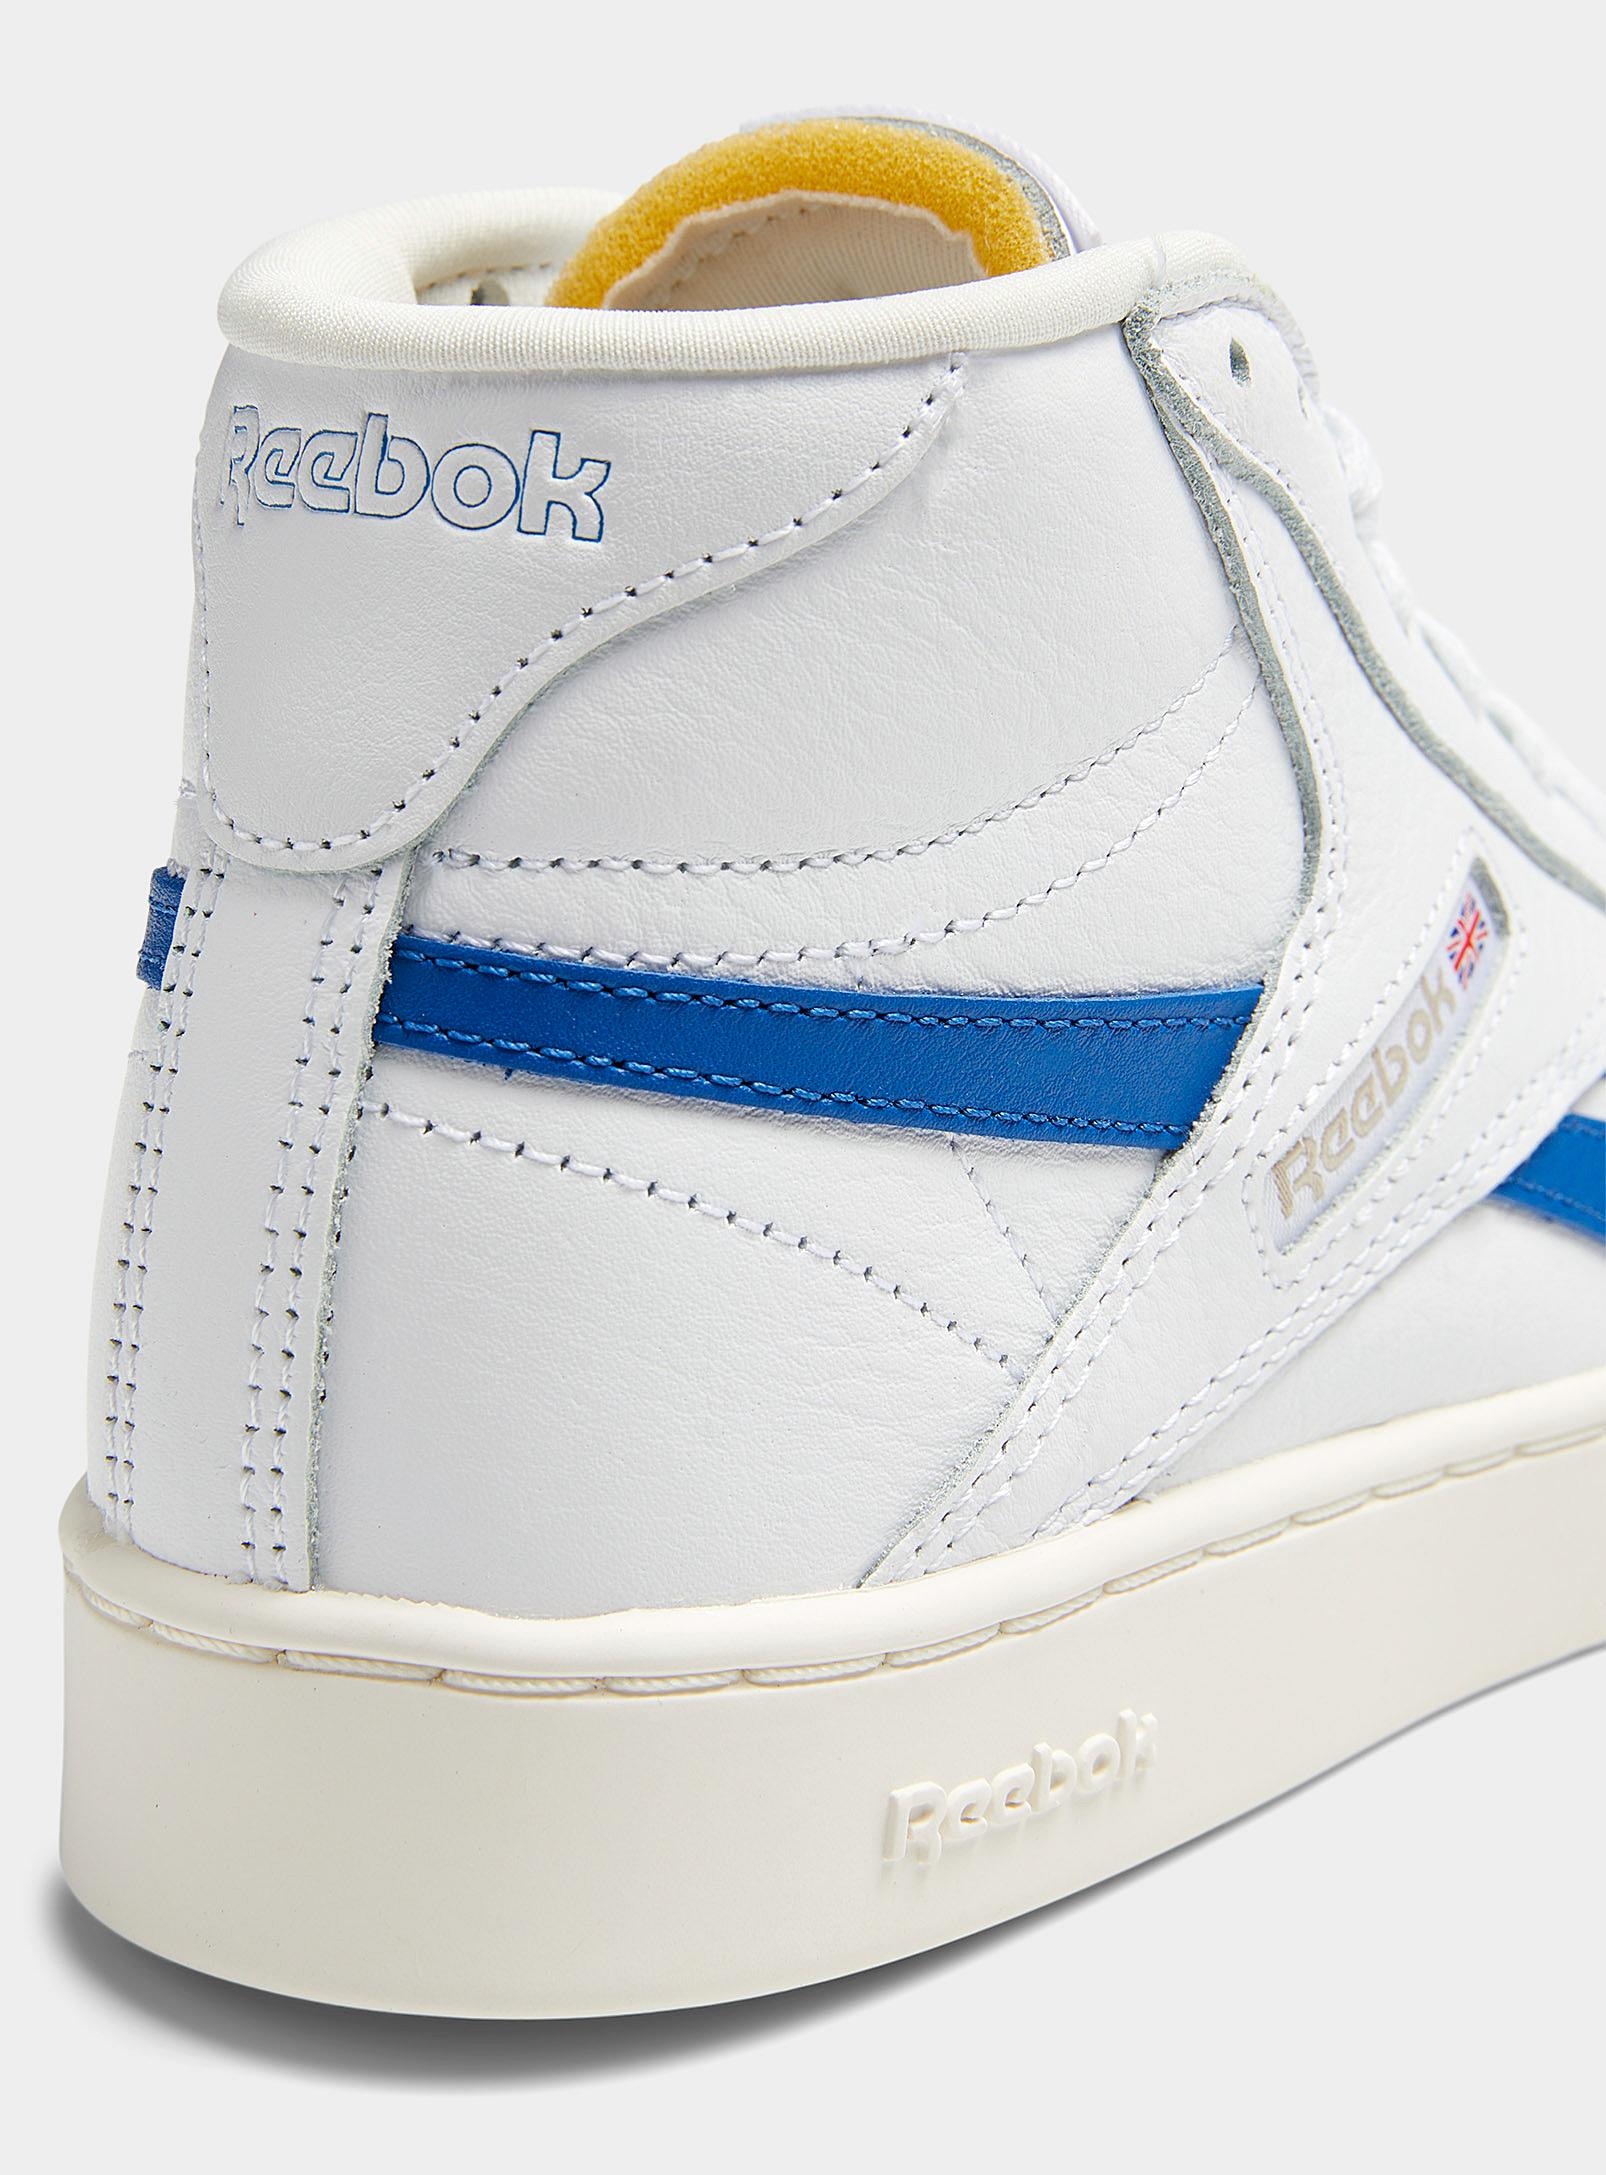 Reebok Club C 85 Form Hi Sneakers Women in Blue | Lyst